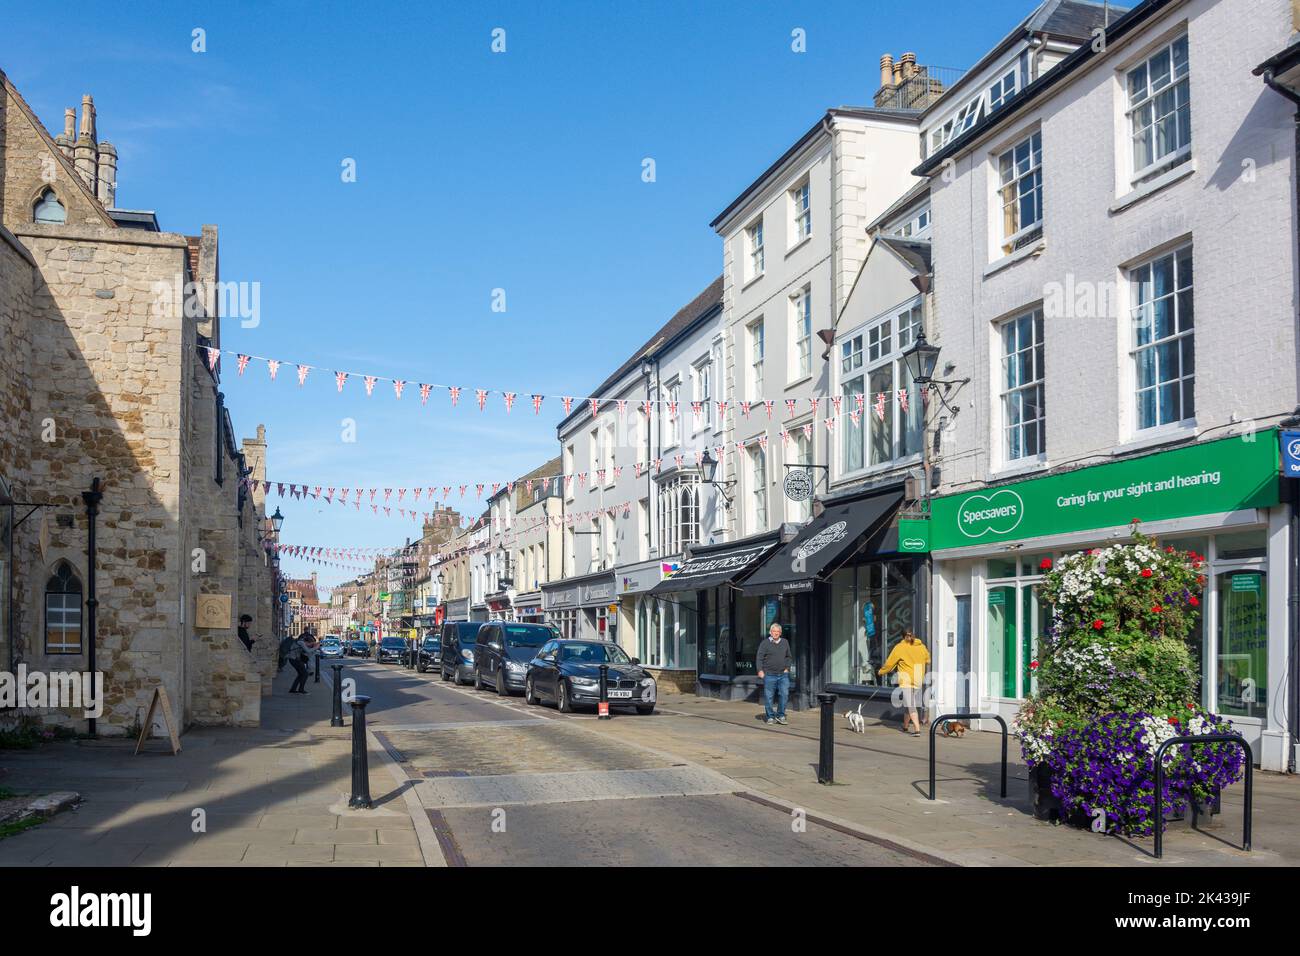 High Street, Ely, Cambridgeshire, England, United Kingdom Stock Photo